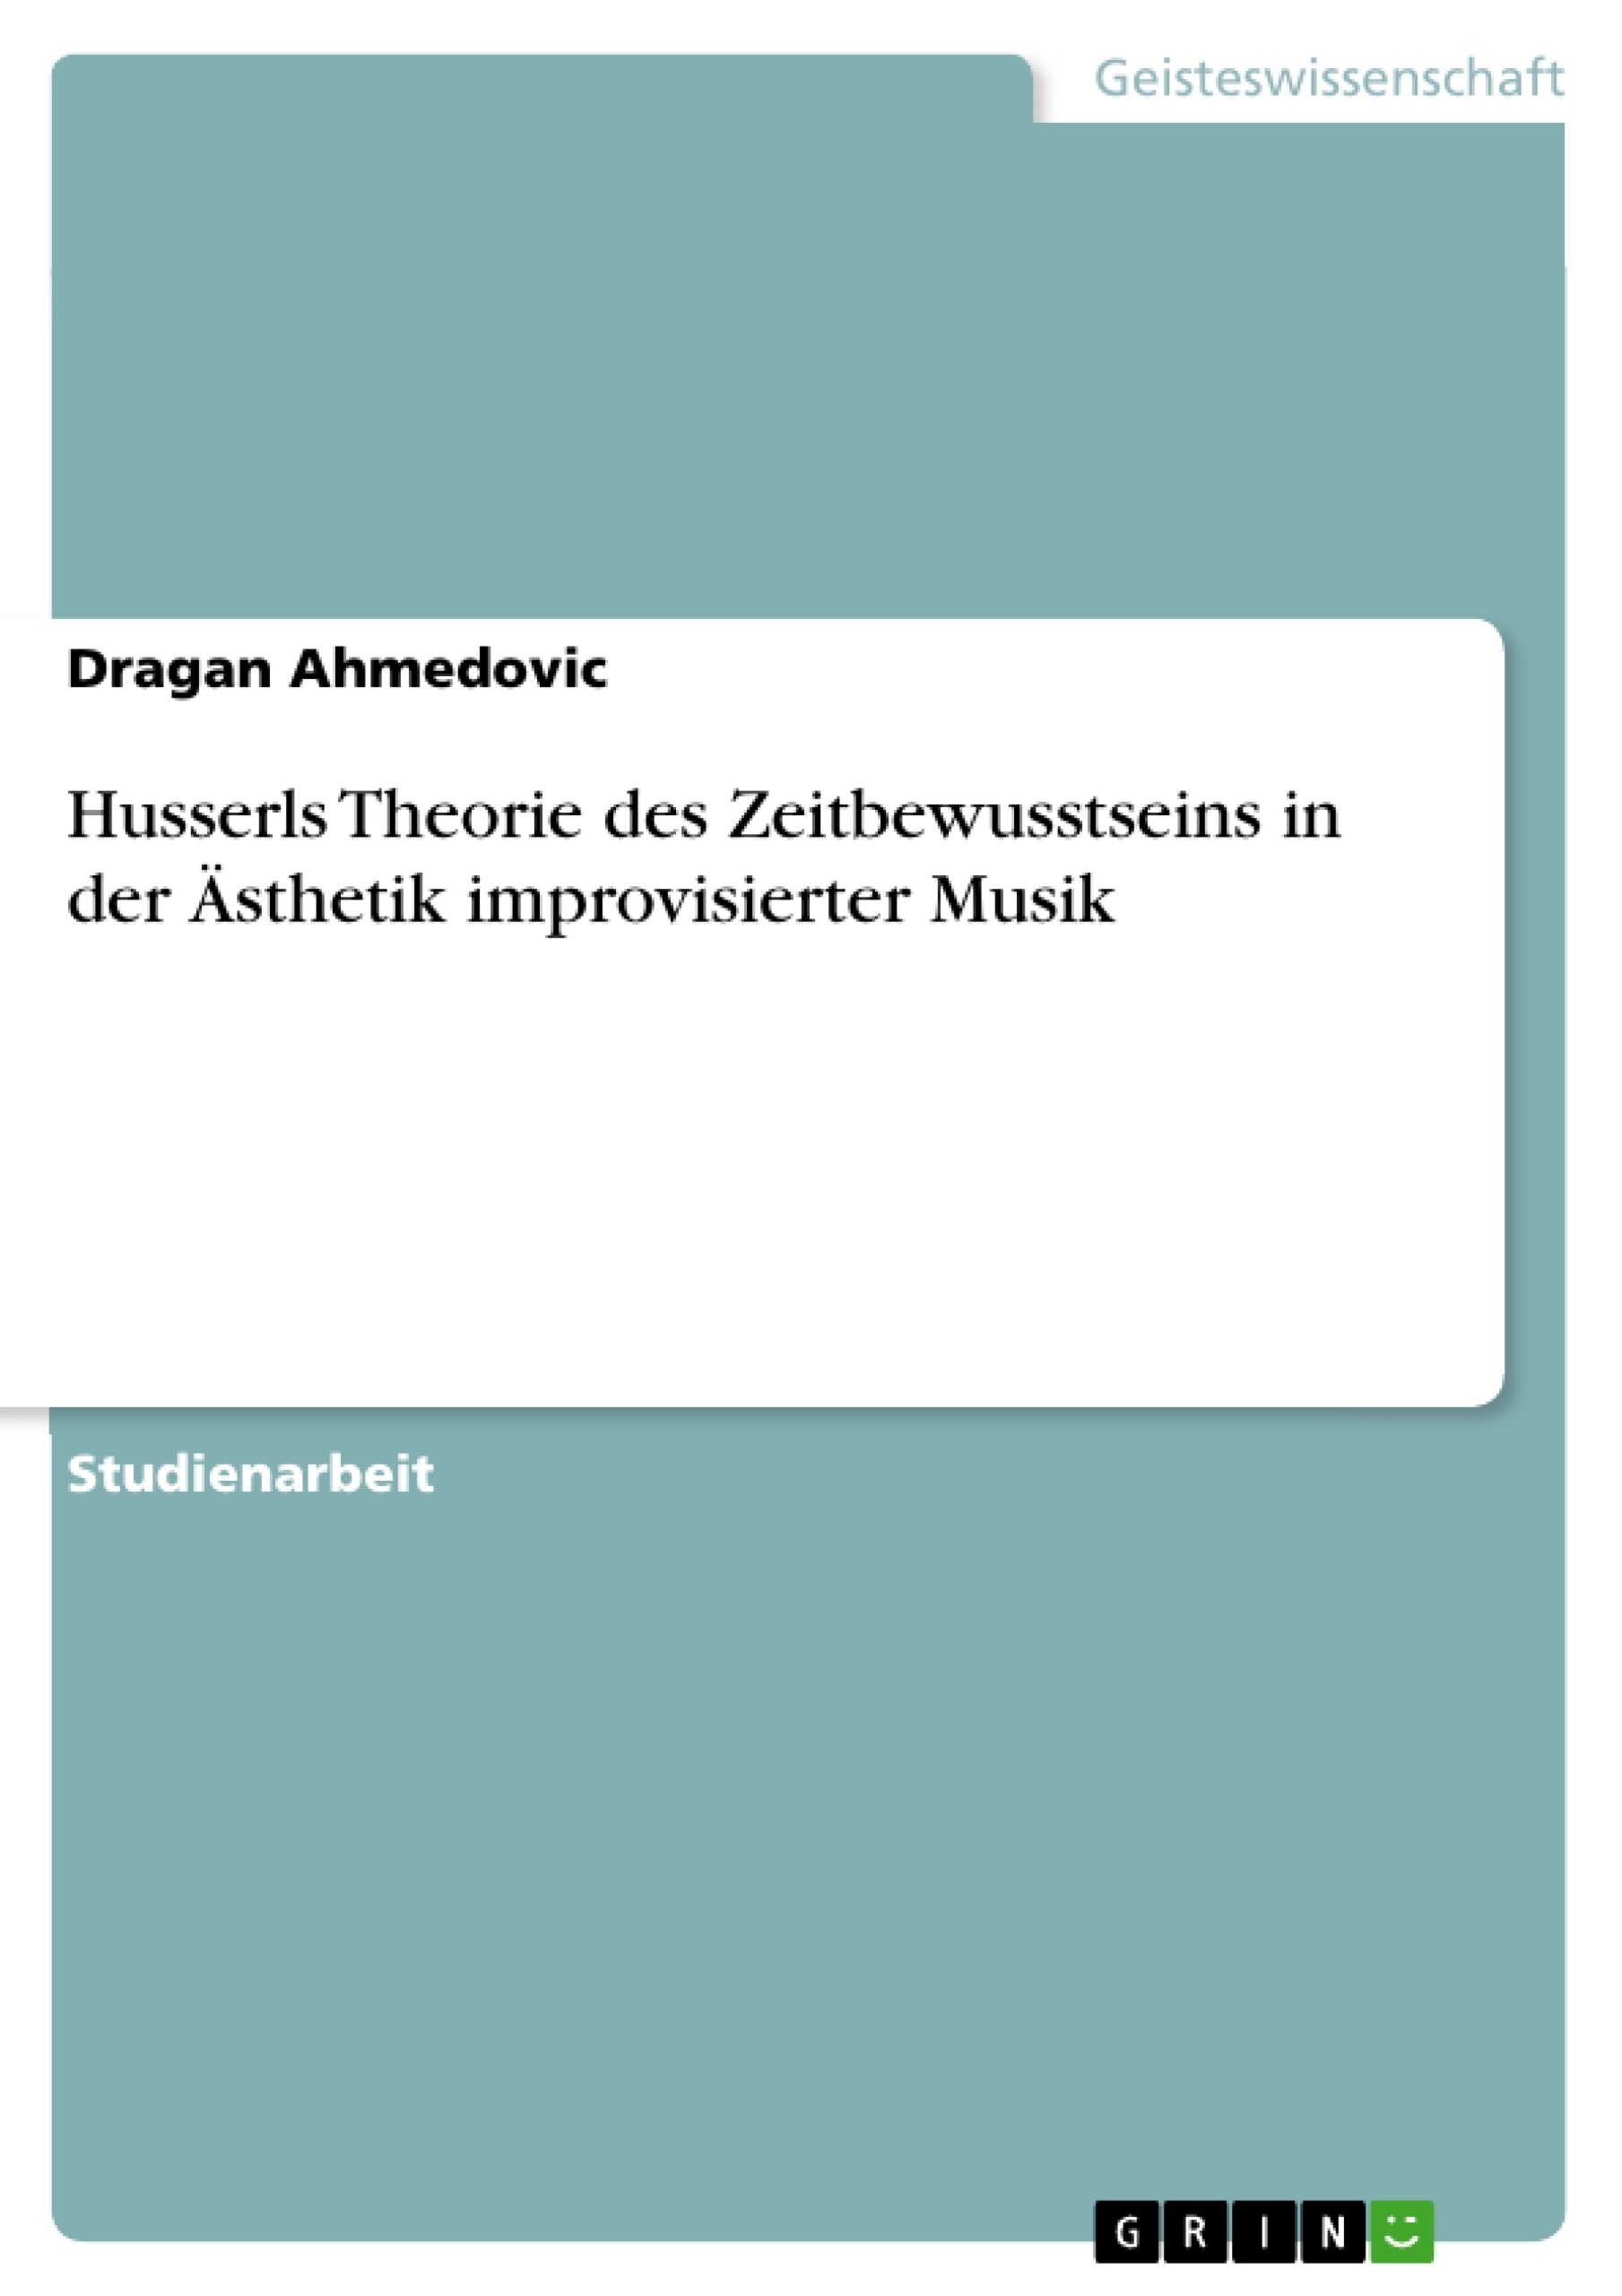 Título: Husserls Theorie des Zeitbewusstseins in der Ästhetik improvisierter Musik